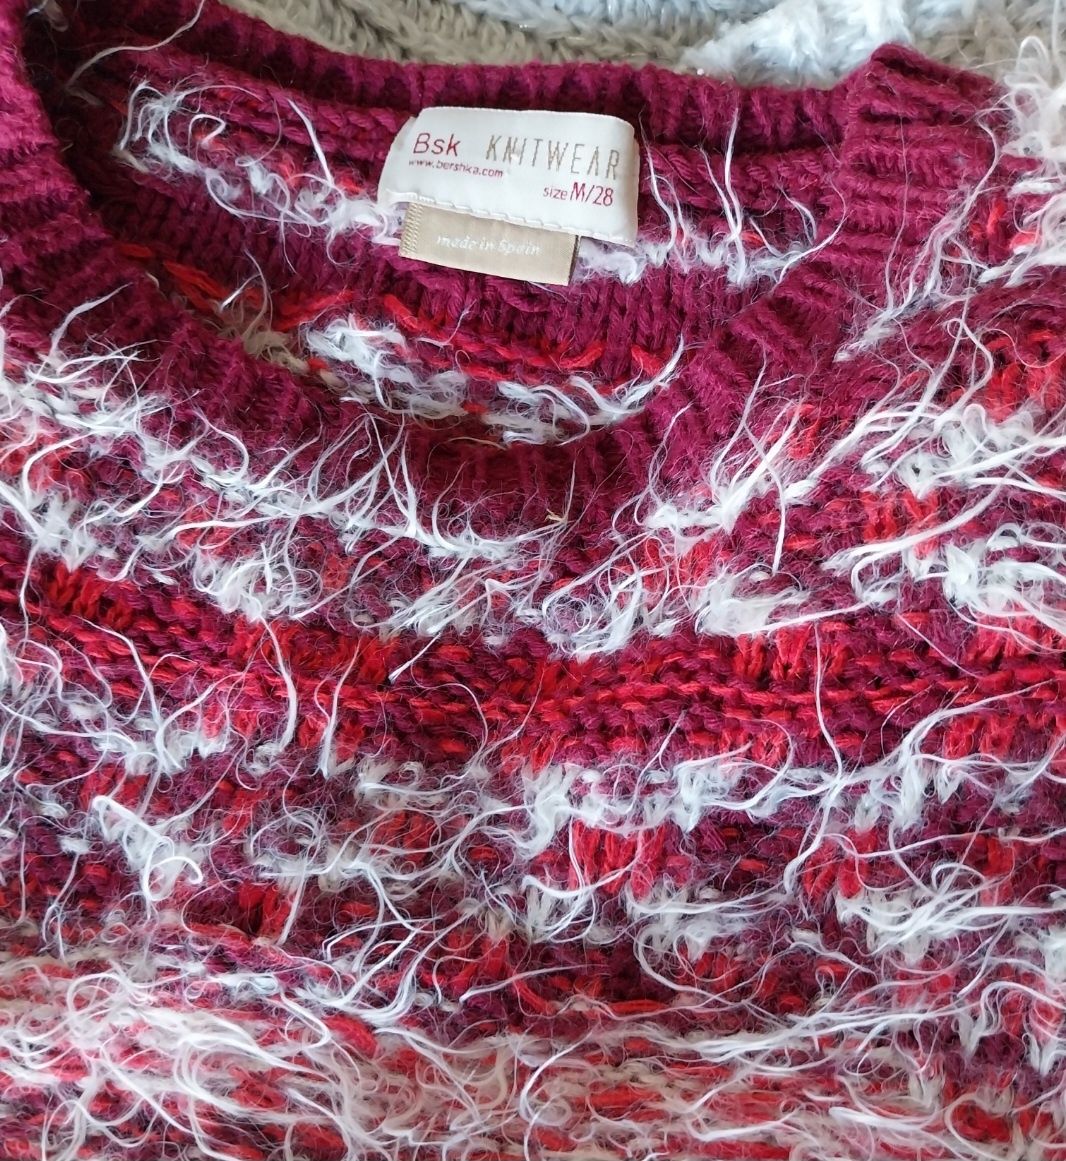 Camisola Bershka, knitwear, inverno, Tamanho M, excelente estado